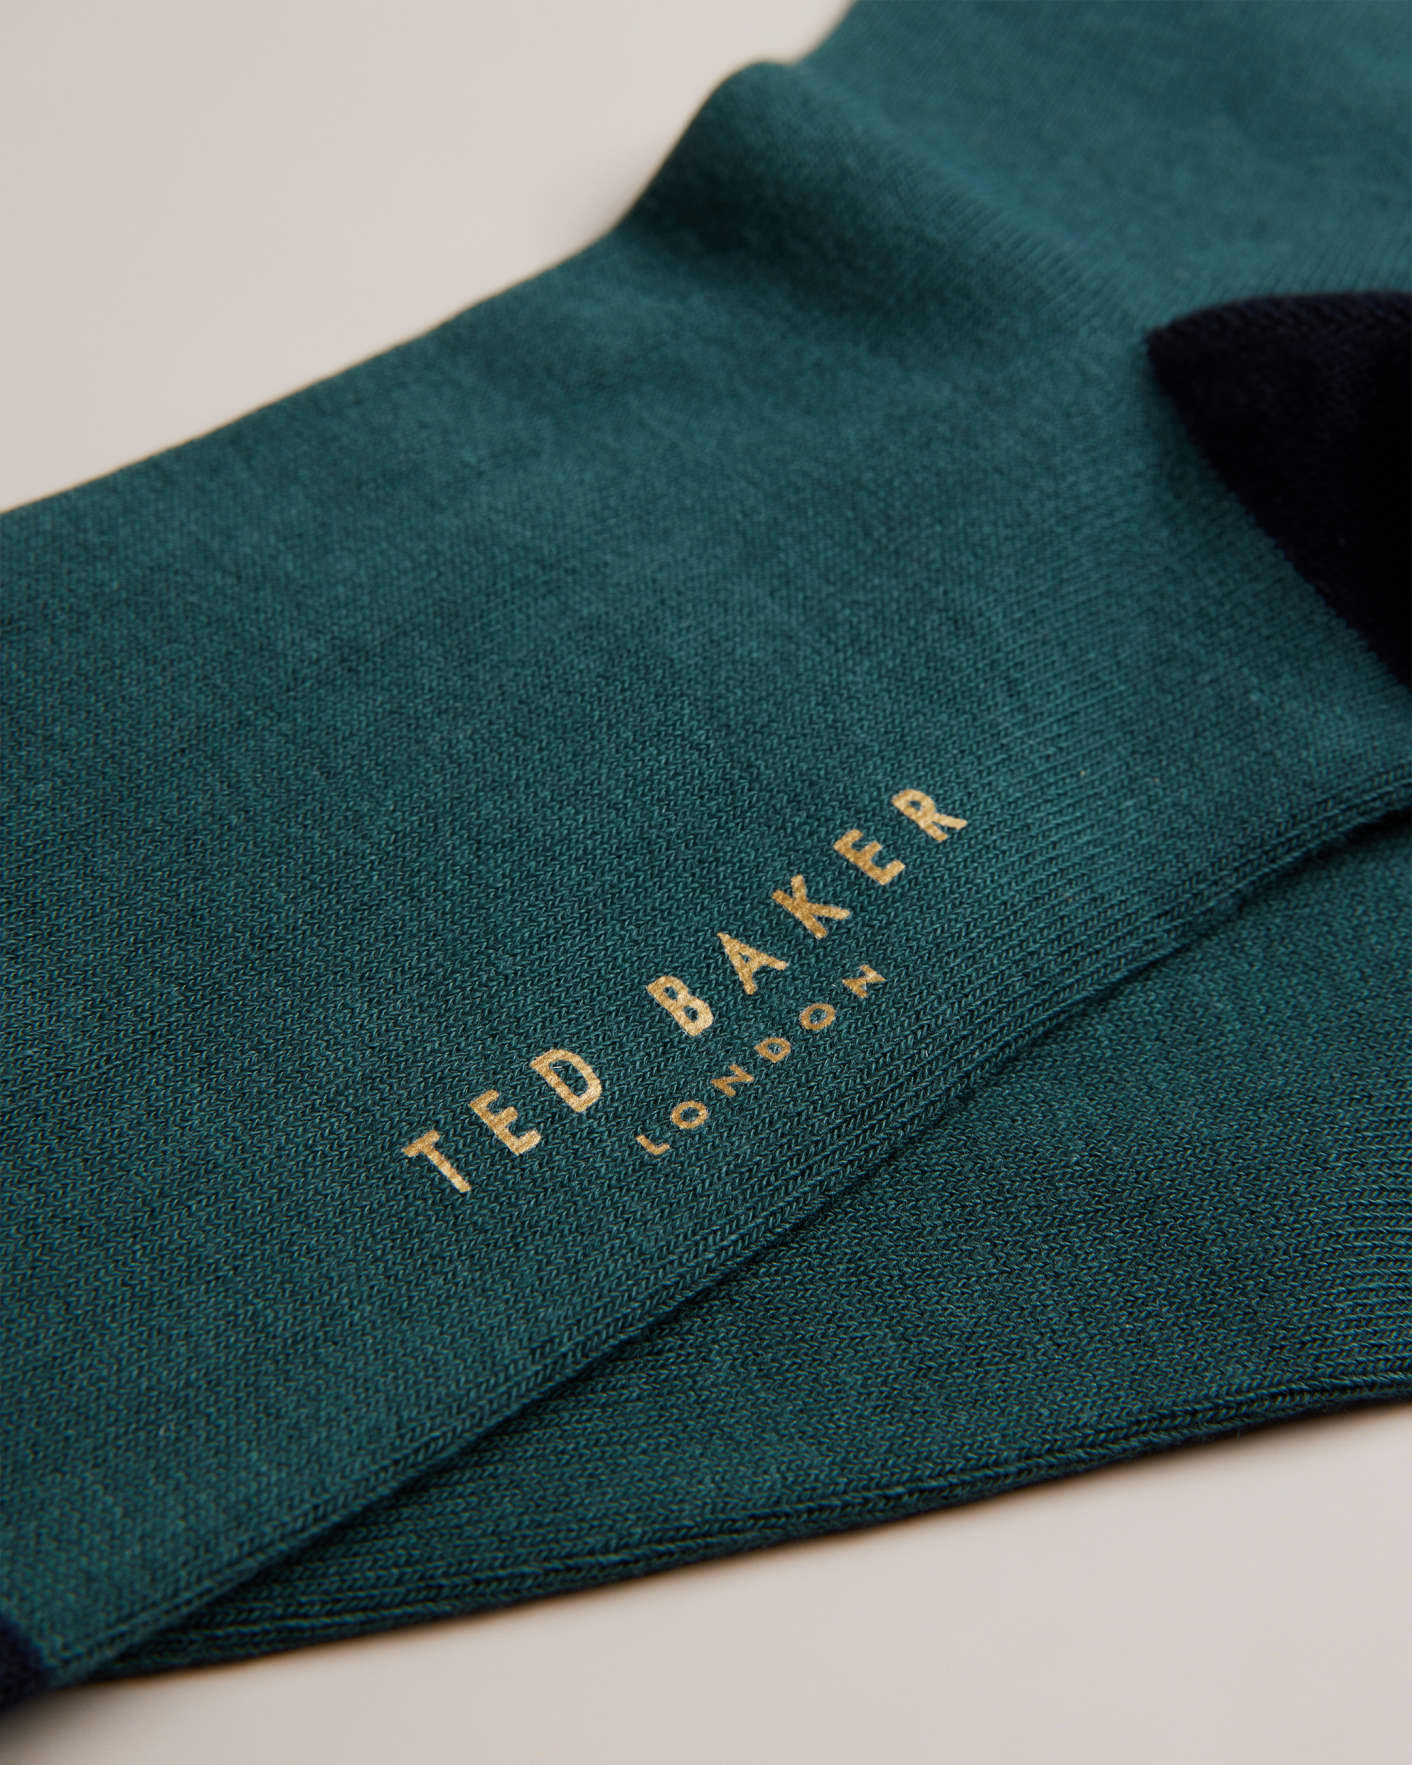 DK-GREEN Plain Sock Ted Baker